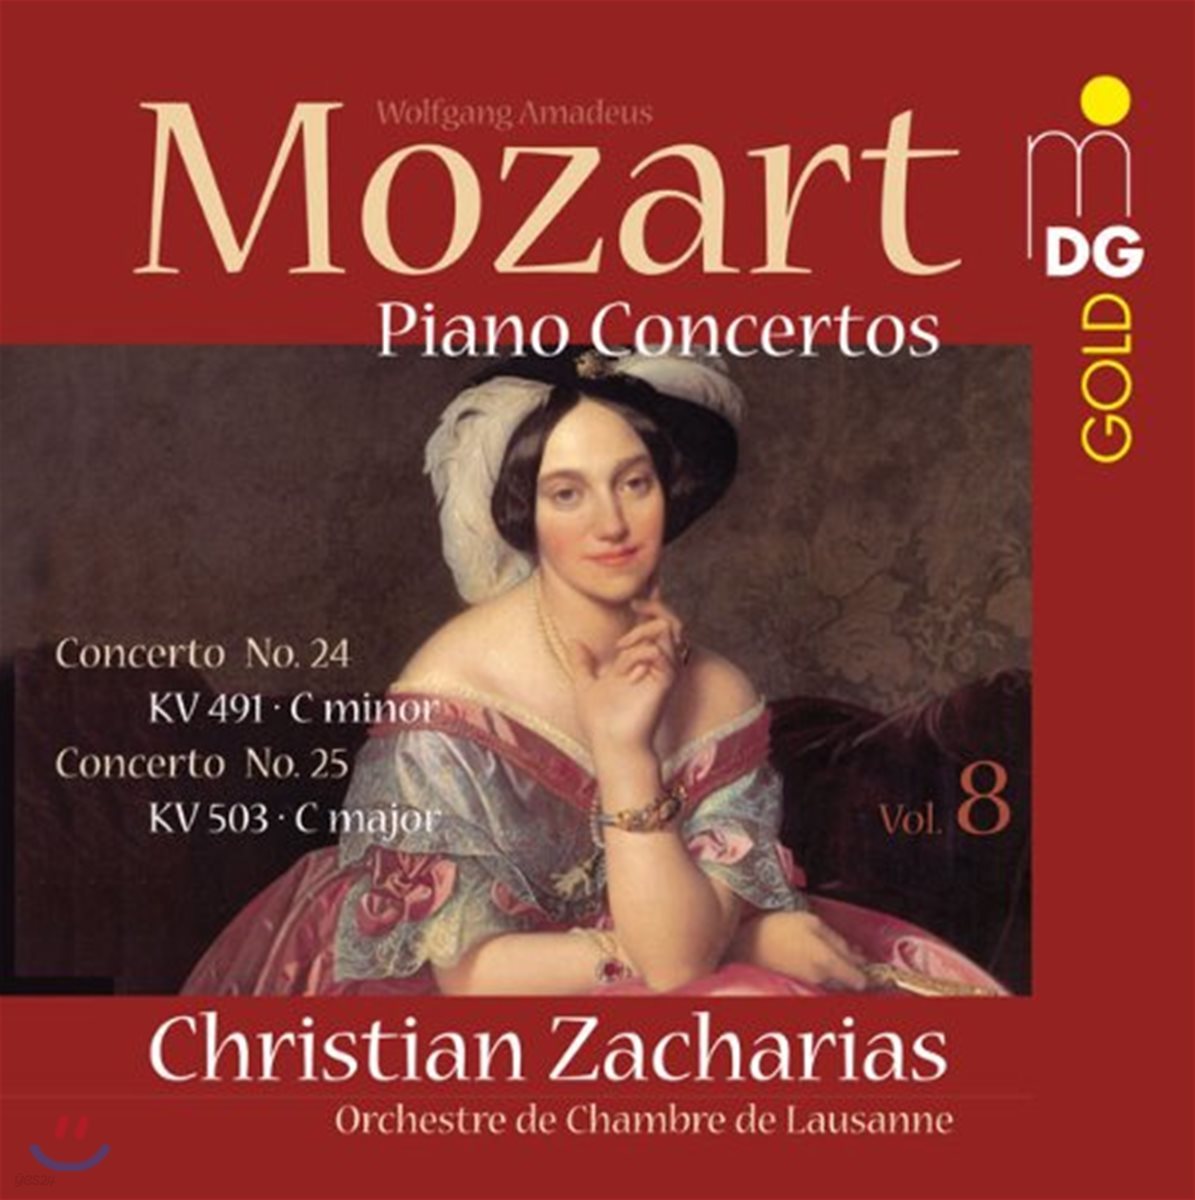 Christian Zacharias 모차르트: 피아노 협주곡 24번 & 25번 (Mozart: Piano Concertos Nos. 24 & 25)